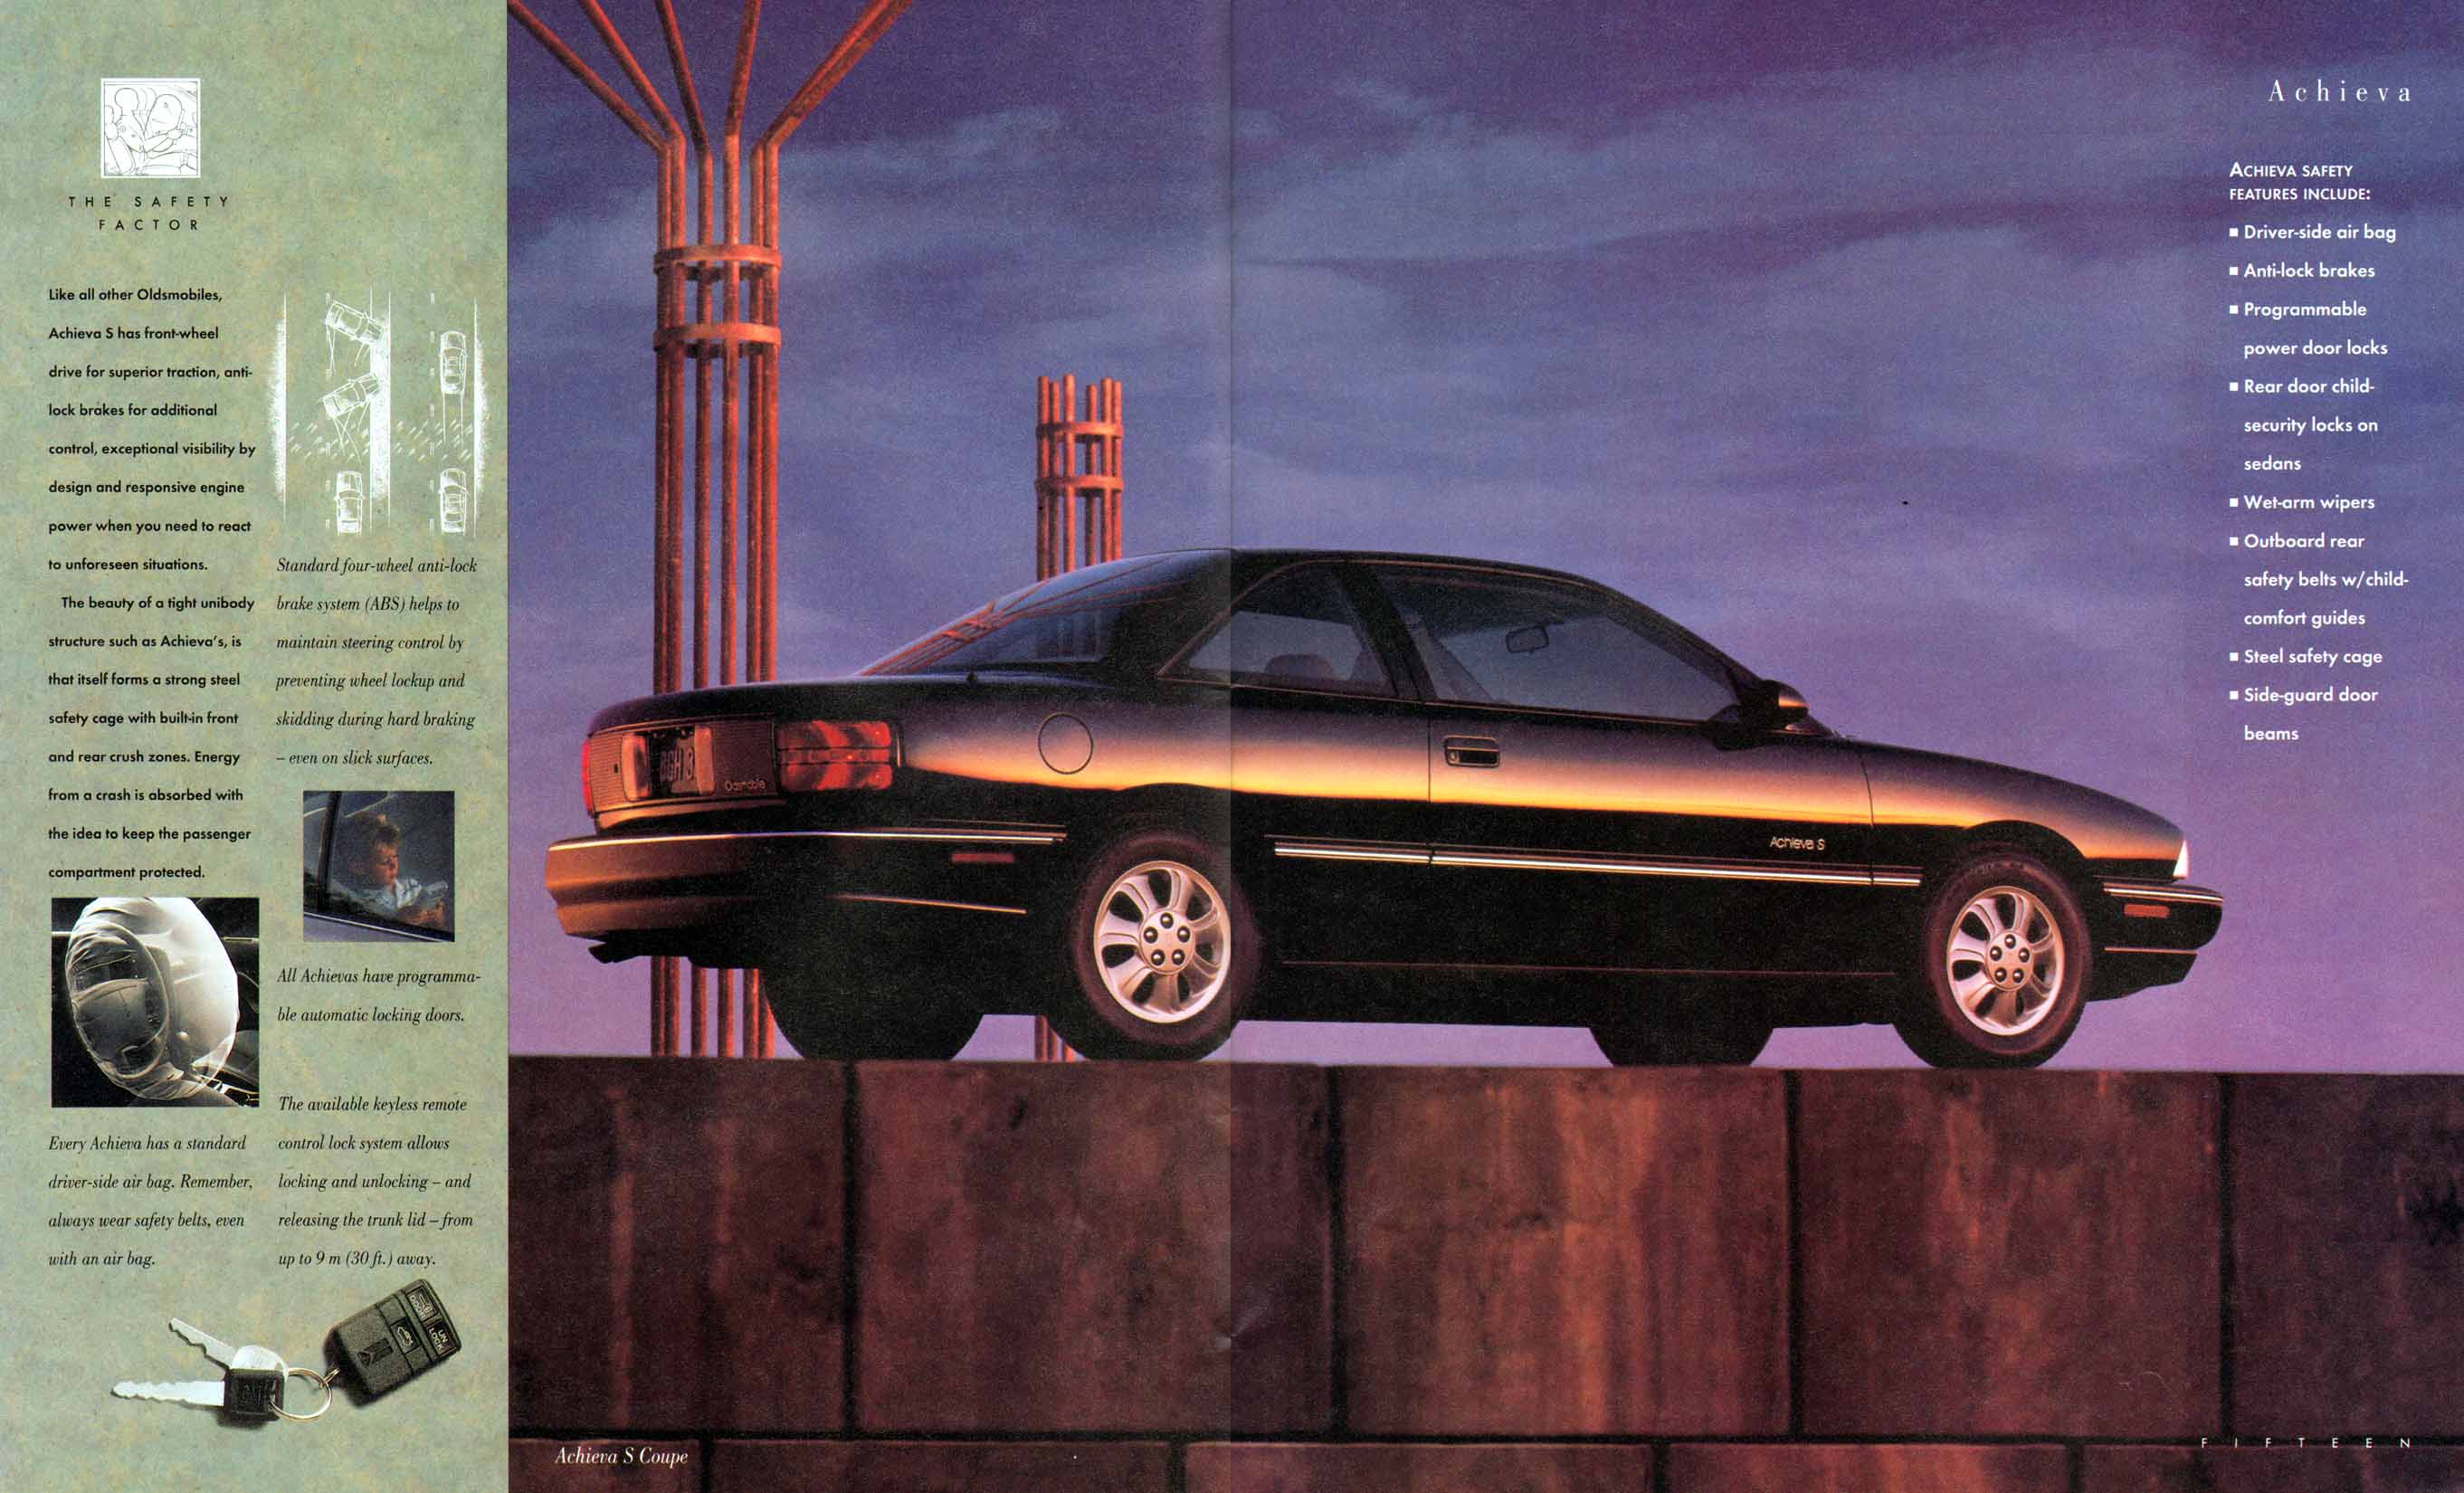 1994_Oldsmobile_Full_Line_Cdn-14-15